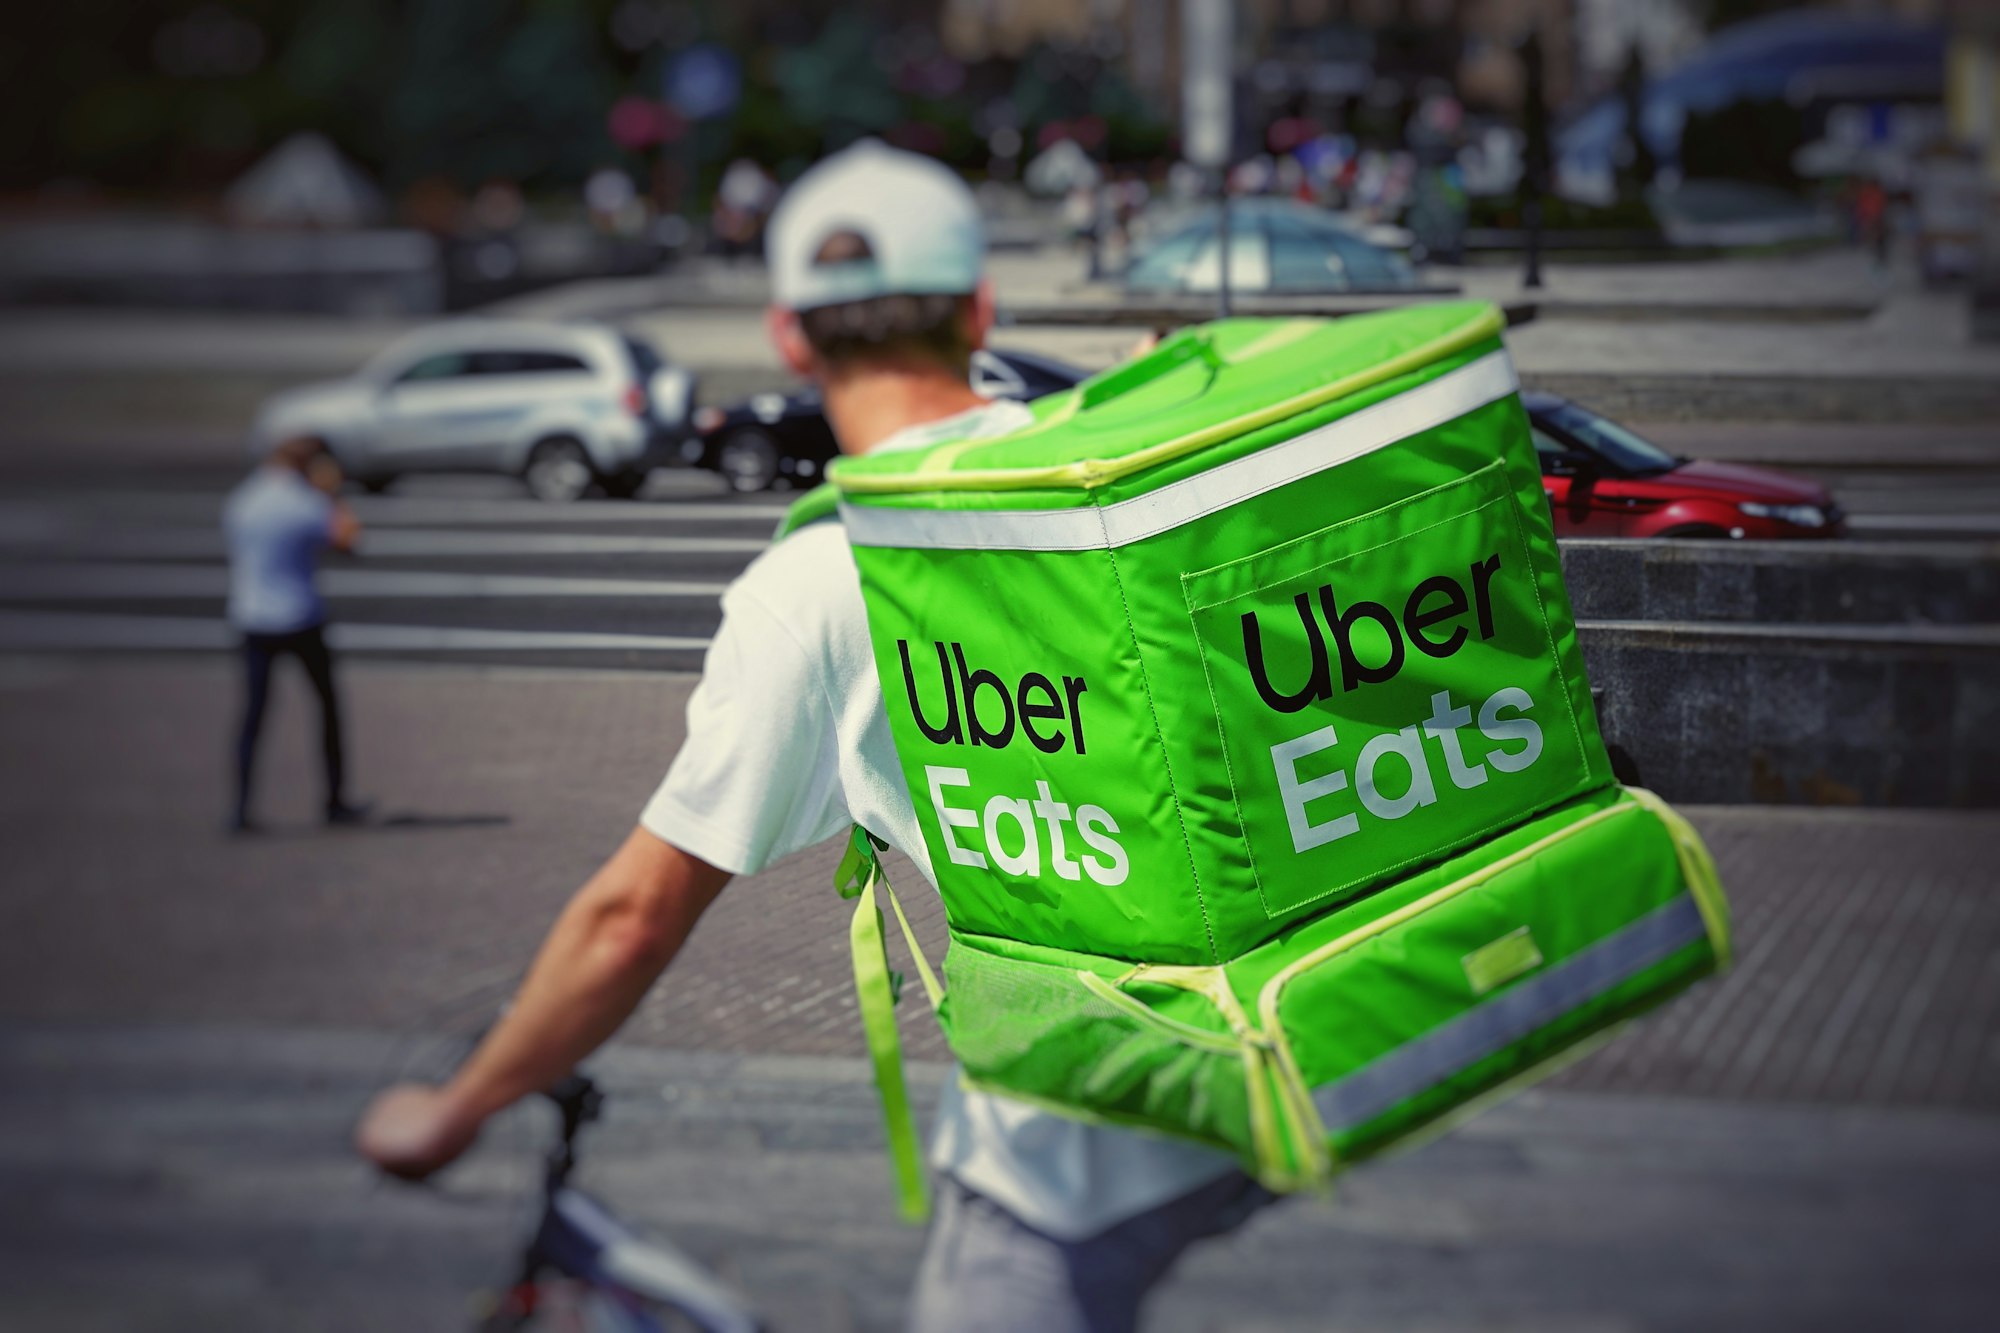 Uber Eats: come sarà il robot per le consegne autonome?